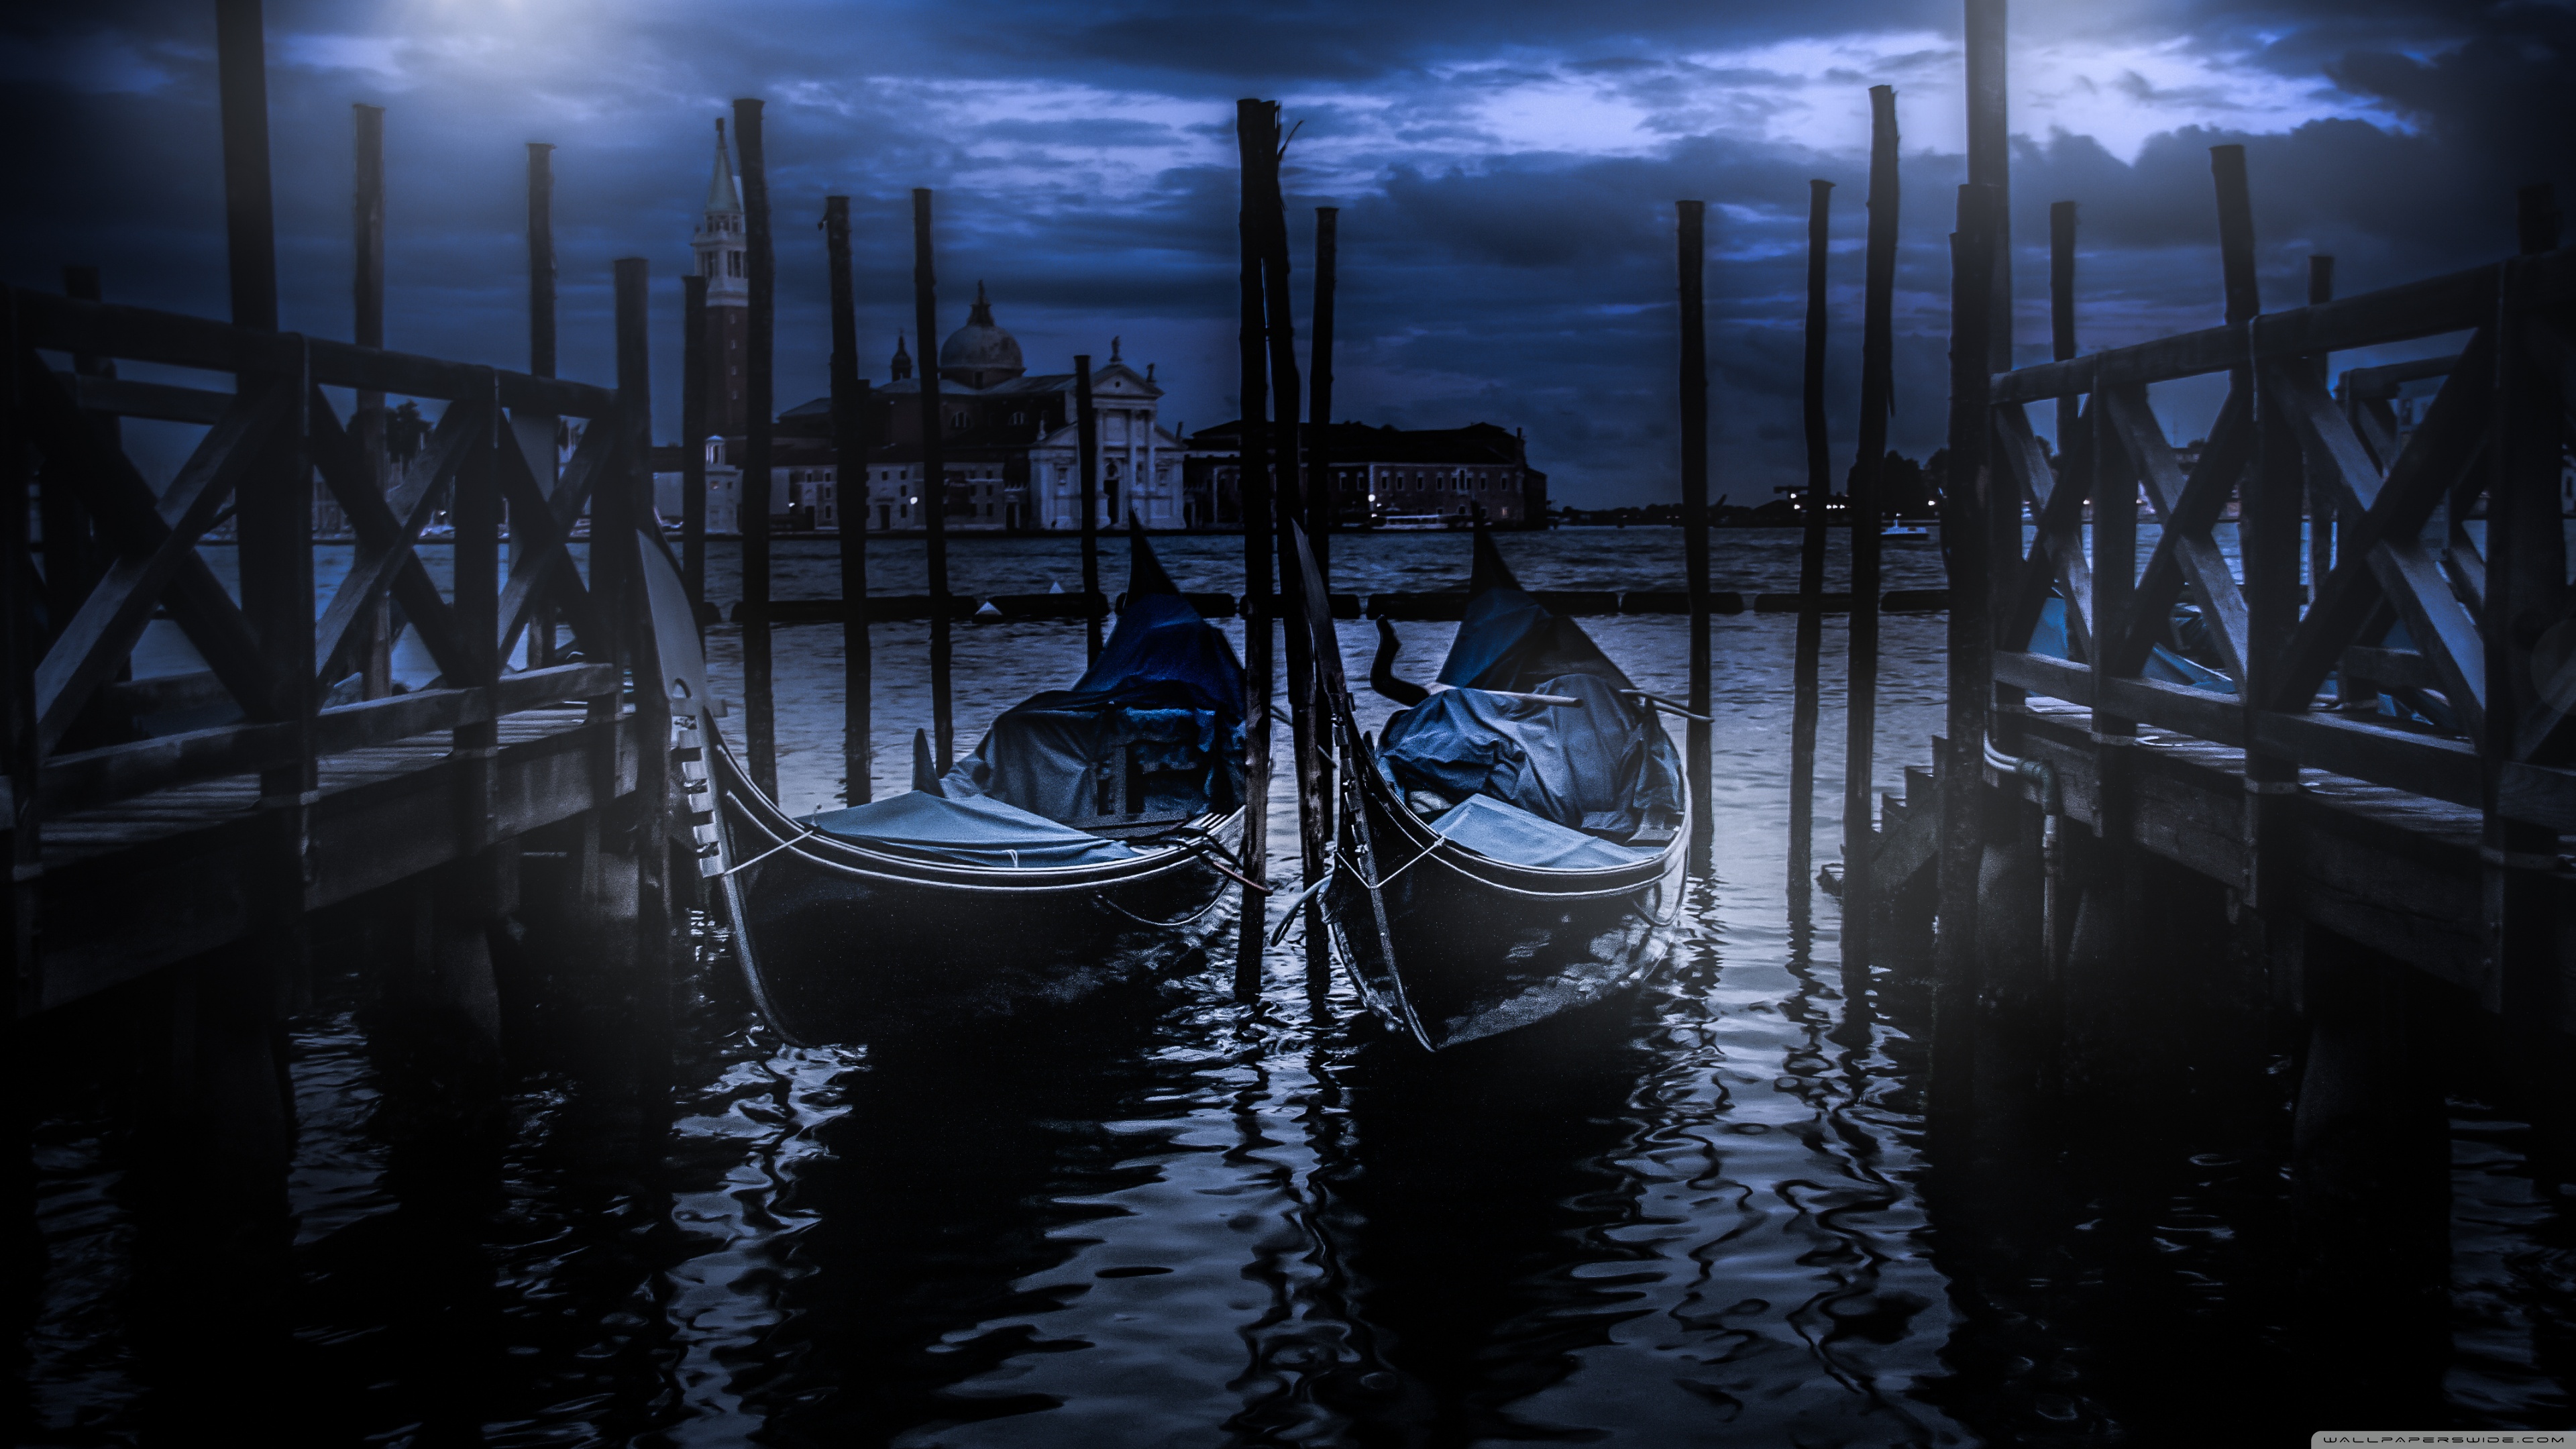 Gondolas In Venice At Night 4k HD Desktop Wallpaper For